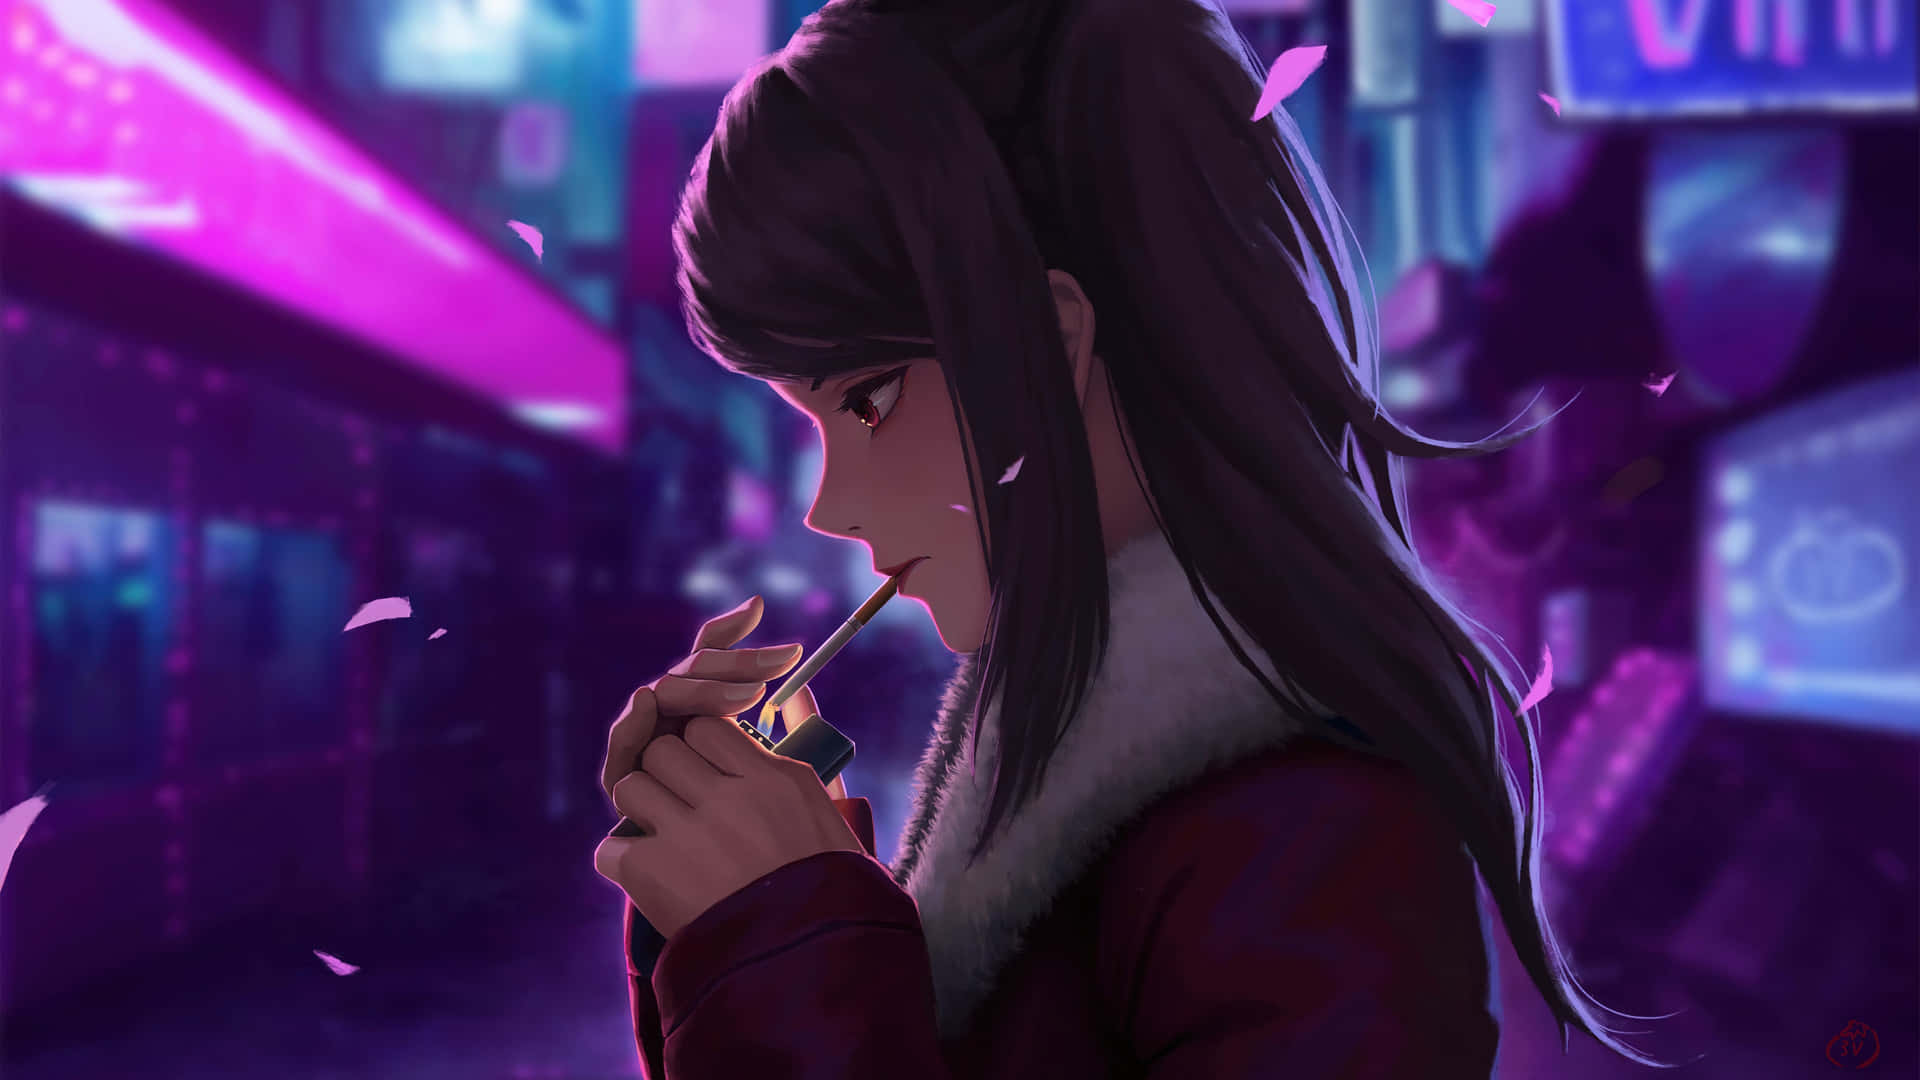 Jacket Anime Girl Smoking Background